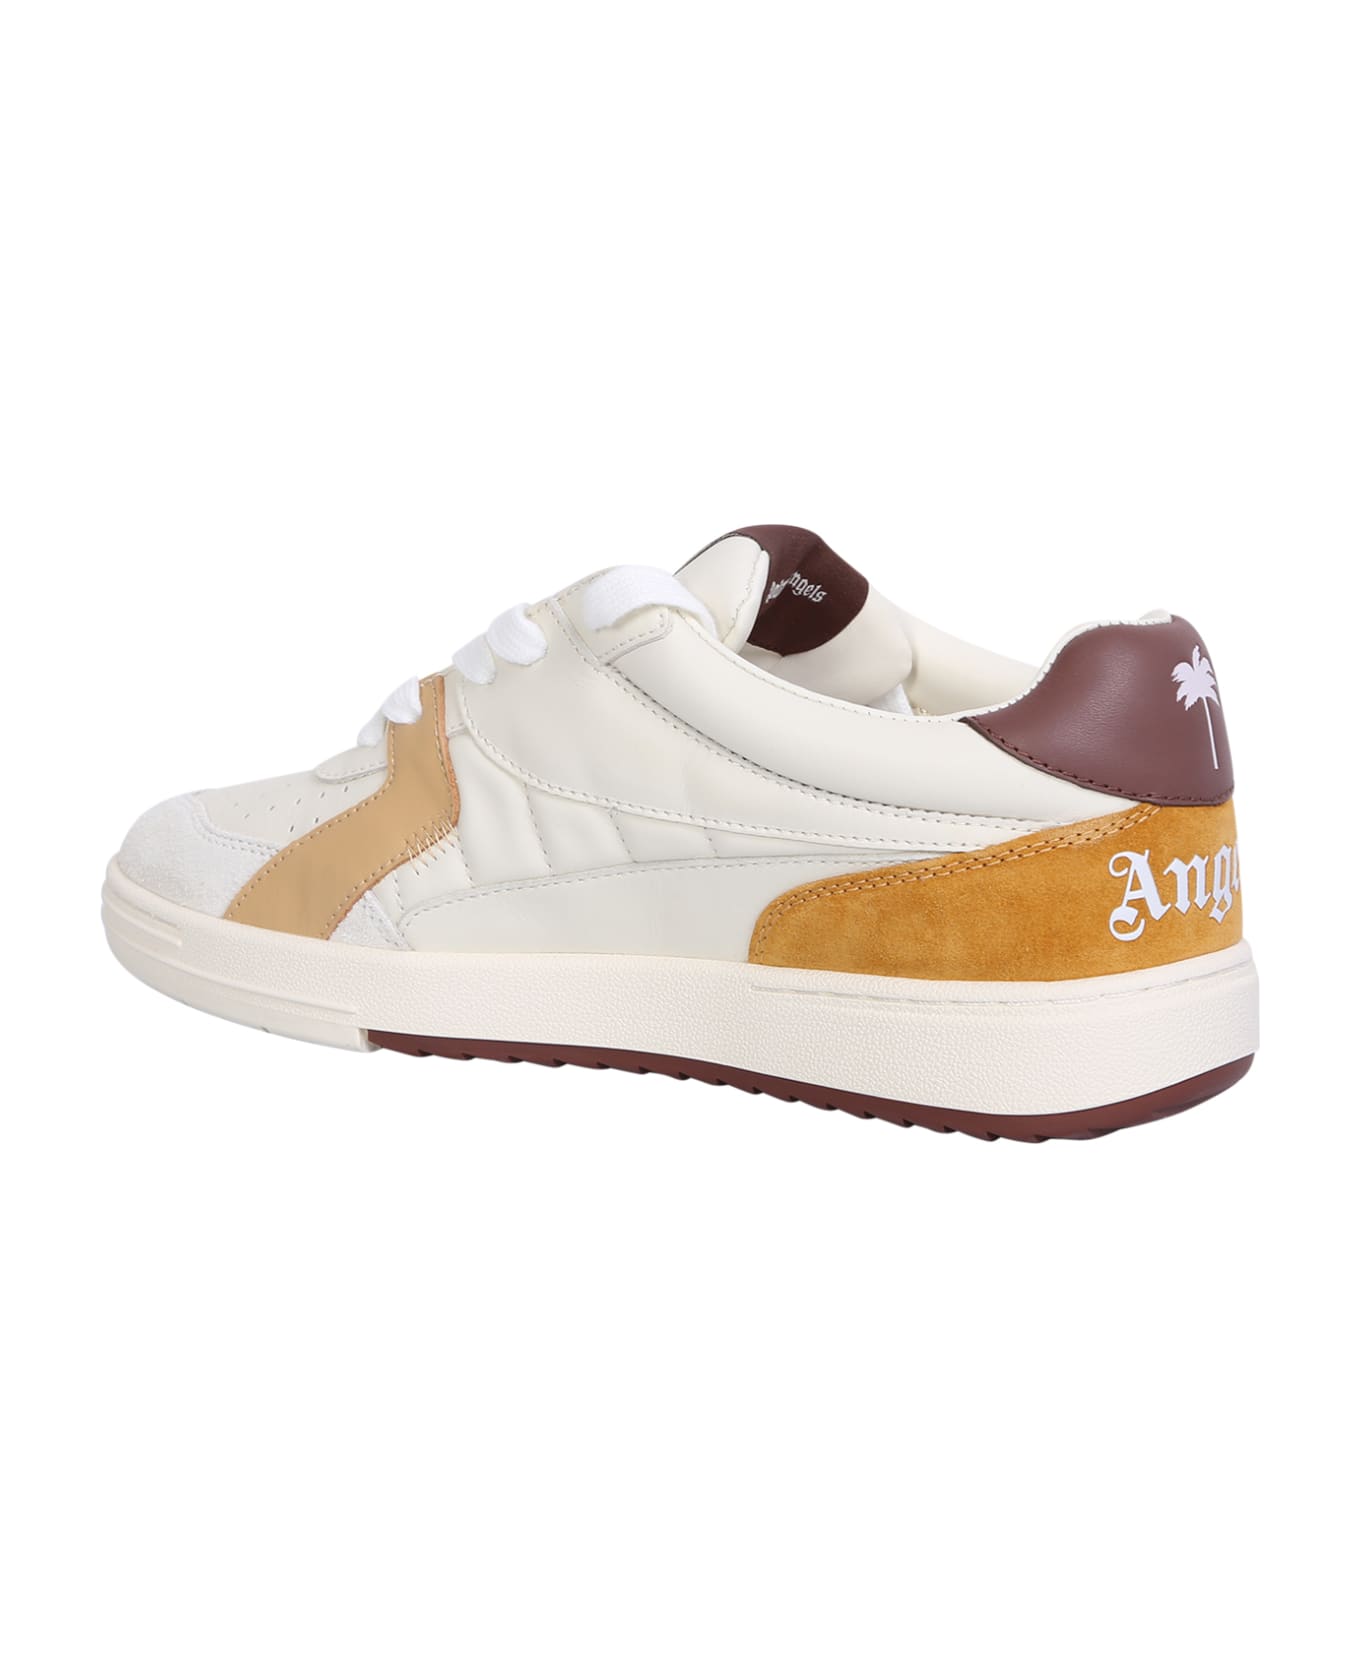 Palm Angels University Beige/brown Sneakers - Beige スニーカー